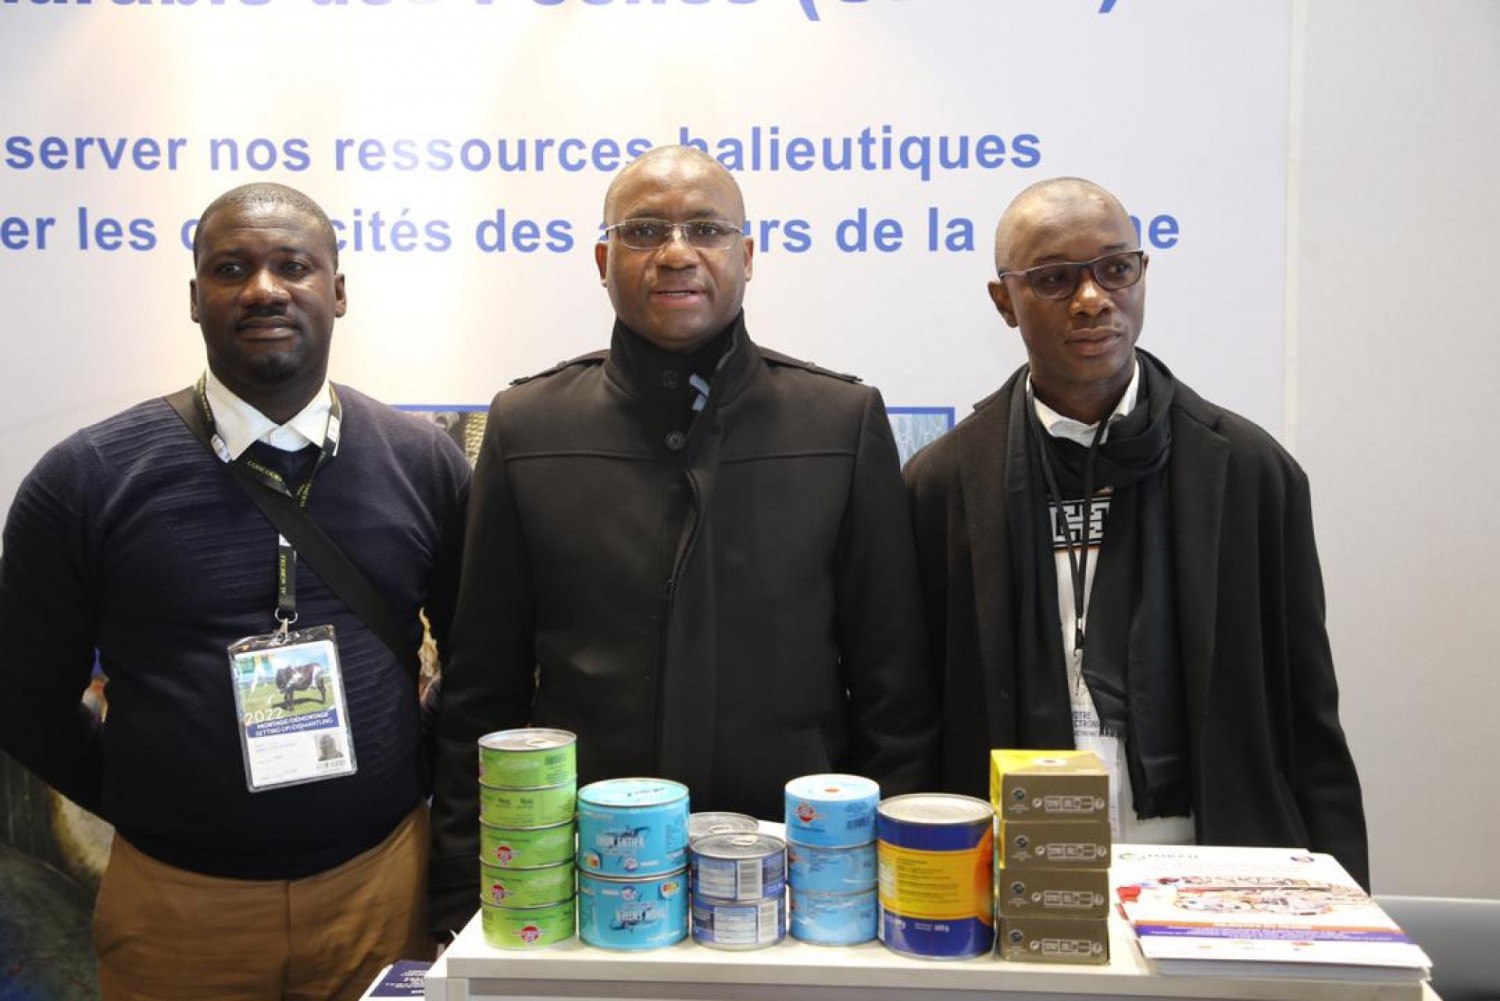 Côte d'Ivoire :  Réduction des importations de viandes à l'occasion du SIA, Sidi effectuera des visites terrains de fermes, pour découvrir et implémenter l'expertise locale